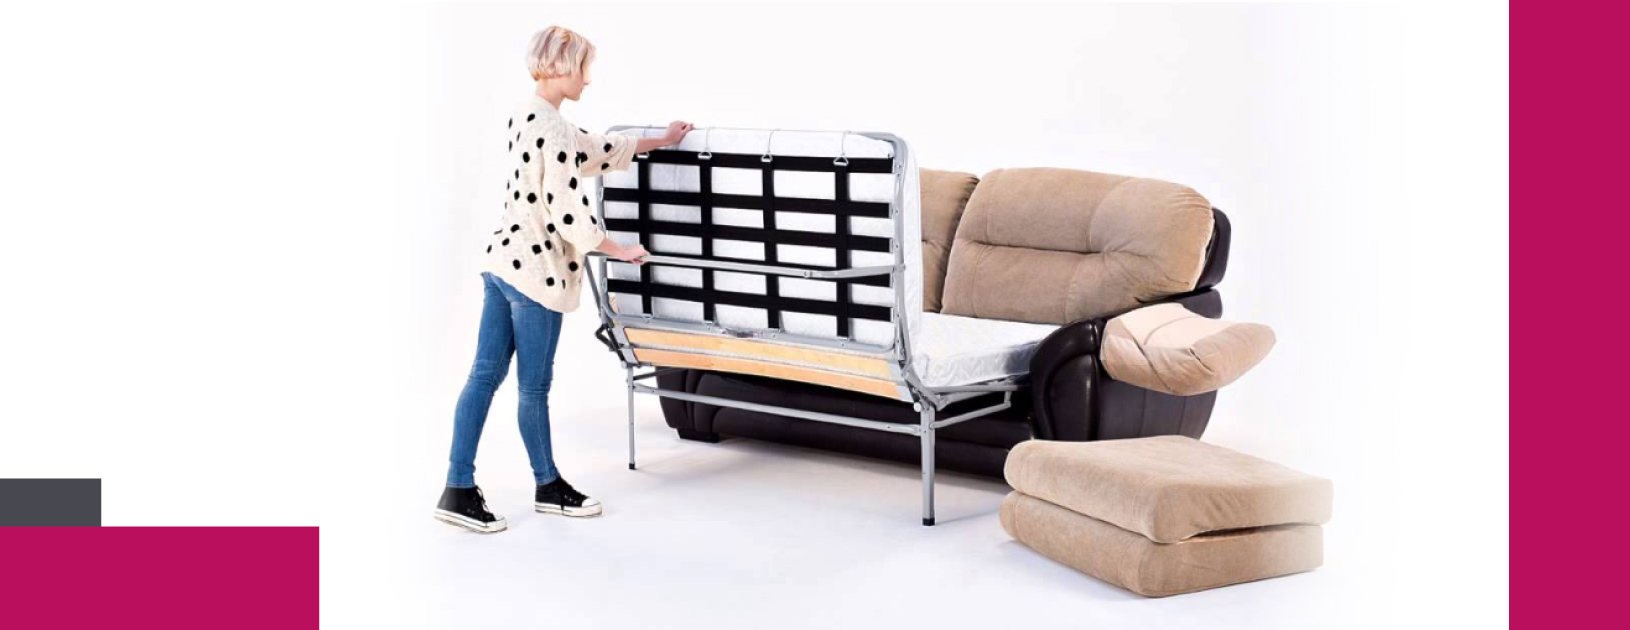 Механізми трансформації диванів: як обрати найкращий?